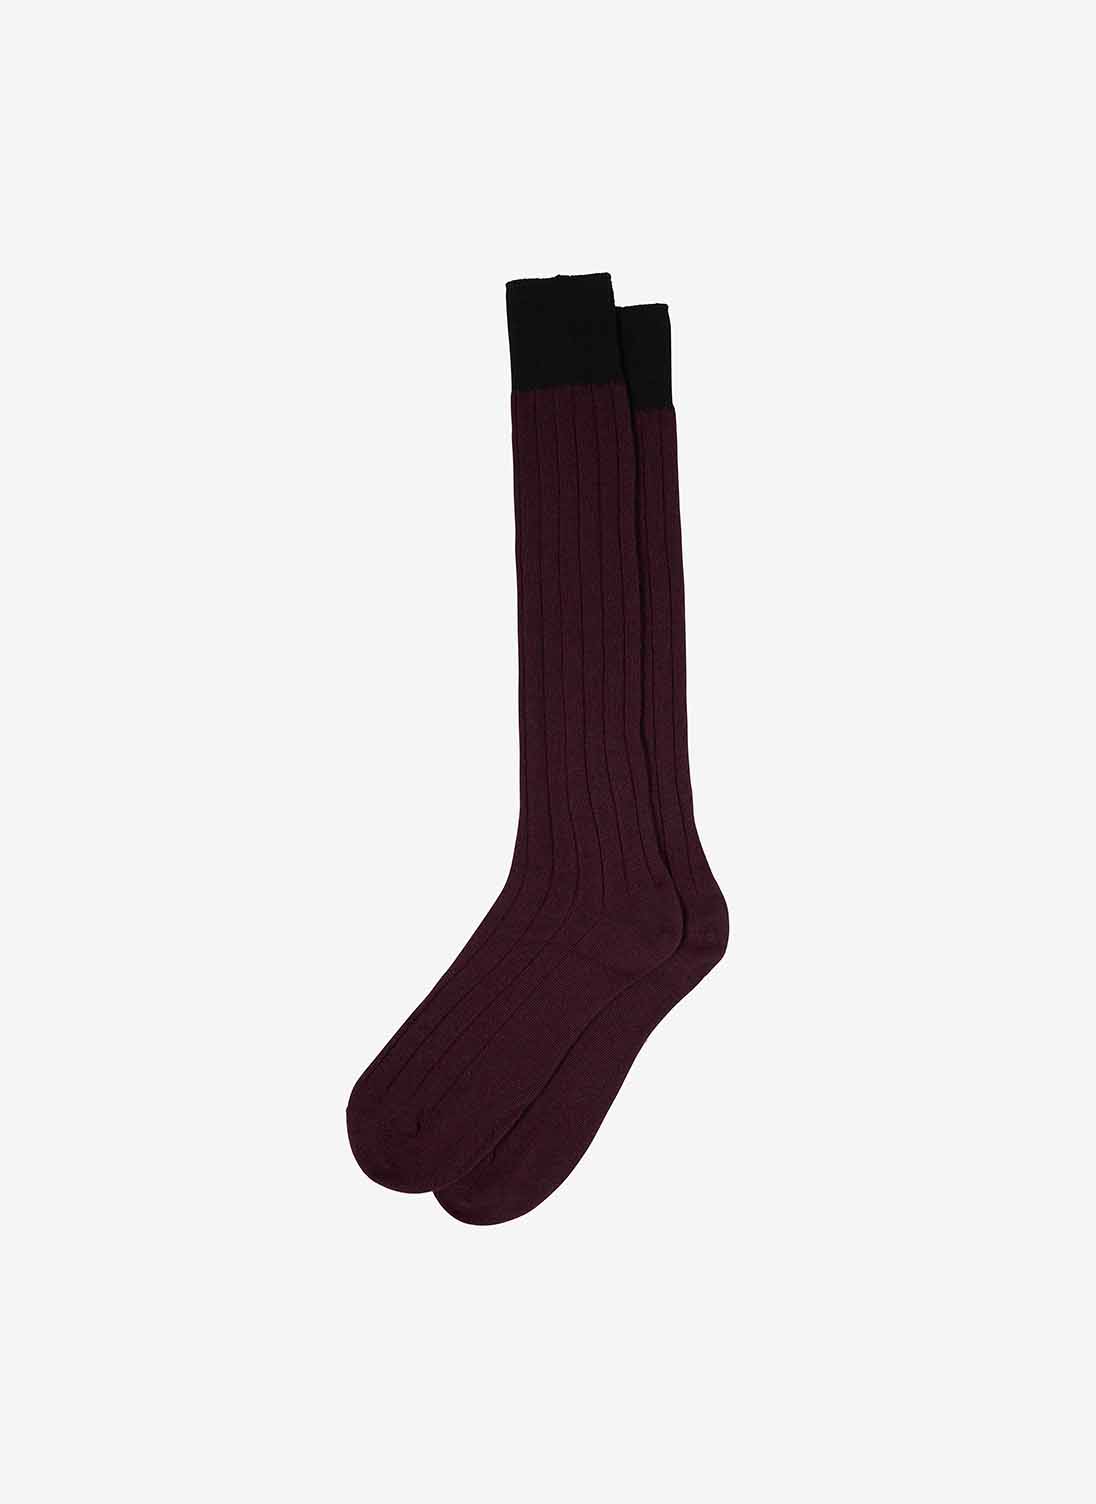 Women's Cashmere Long Socks Oxblood